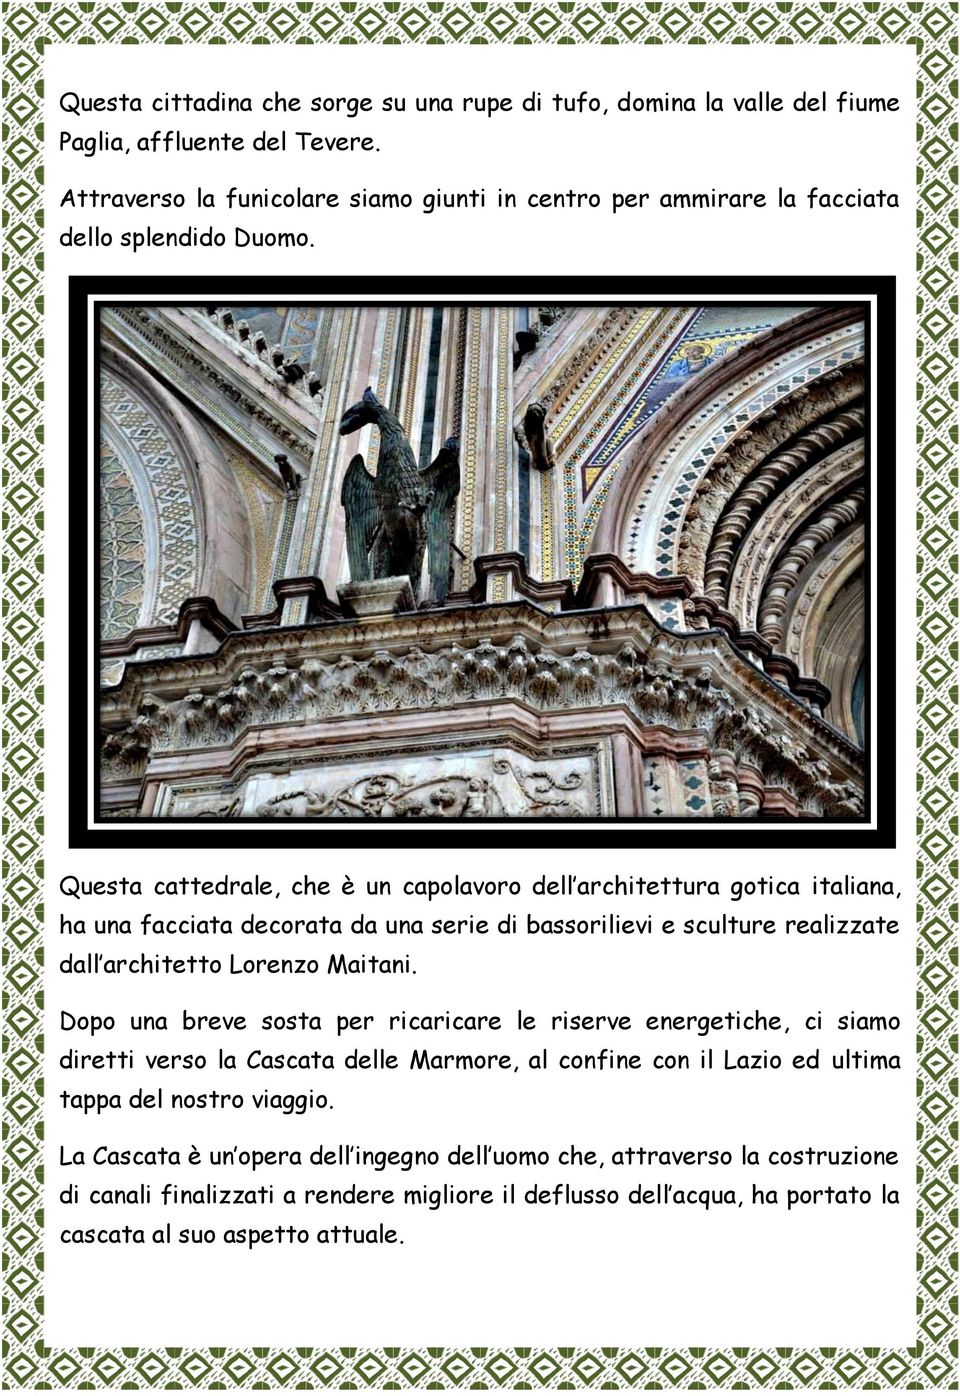 Questa cattedrale, che è un capolavoro dell architettura gotica italiana, ha una facciata decorata da una serie di bassorilievi e sculture realizzate dall architetto Lorenzo Maitani.